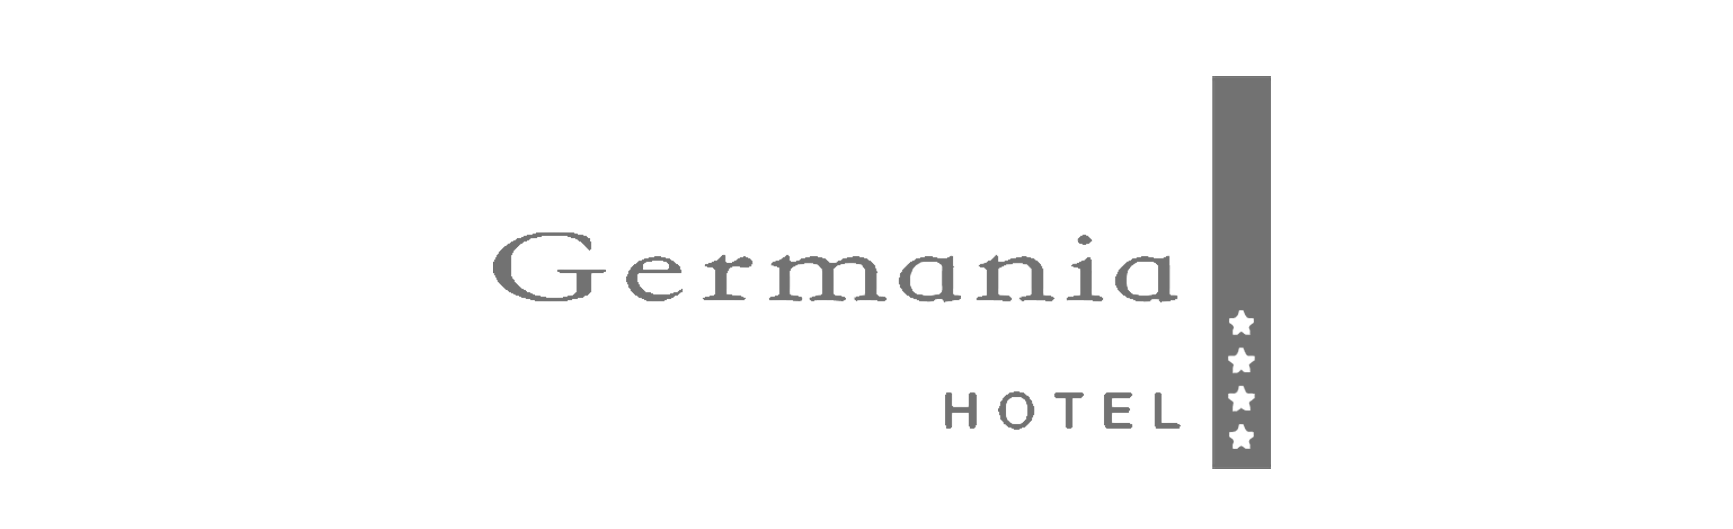 hotelgermania